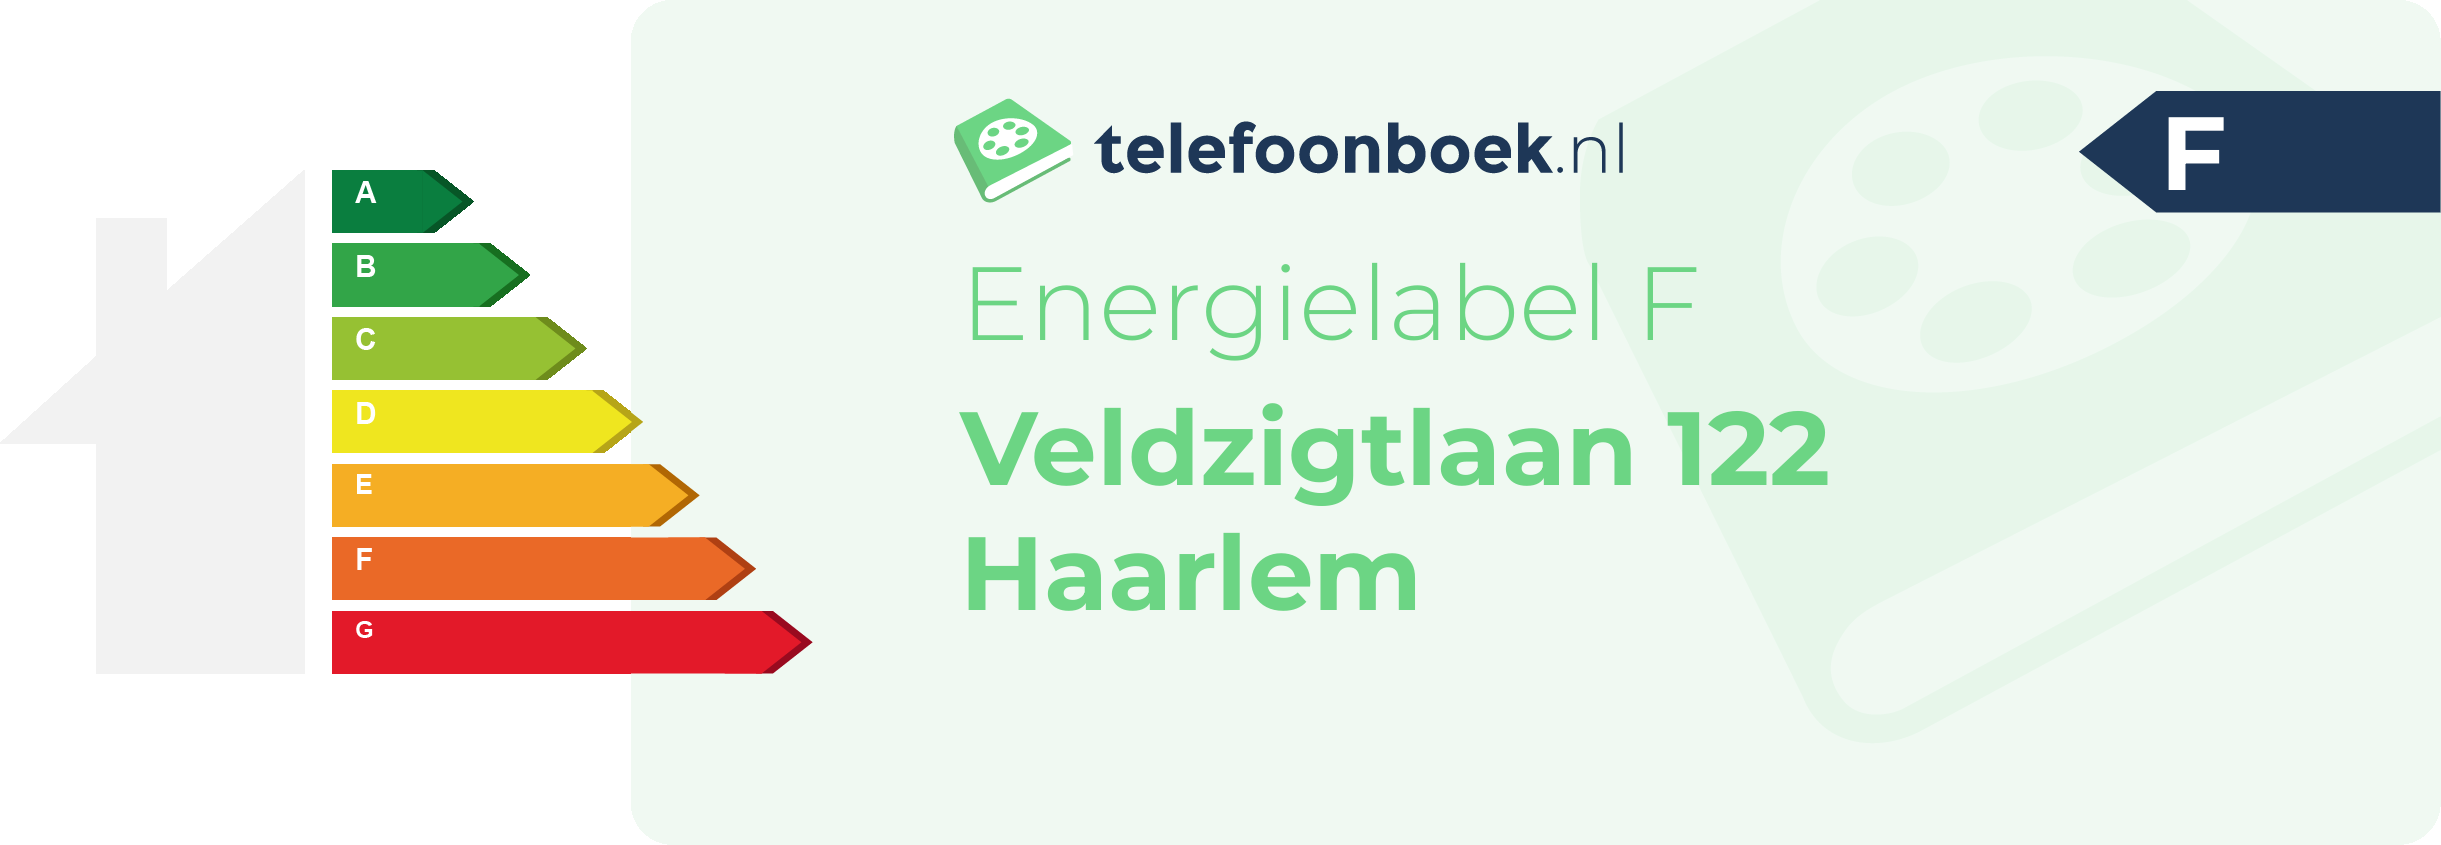 Energielabel Veldzigtlaan 122 Haarlem